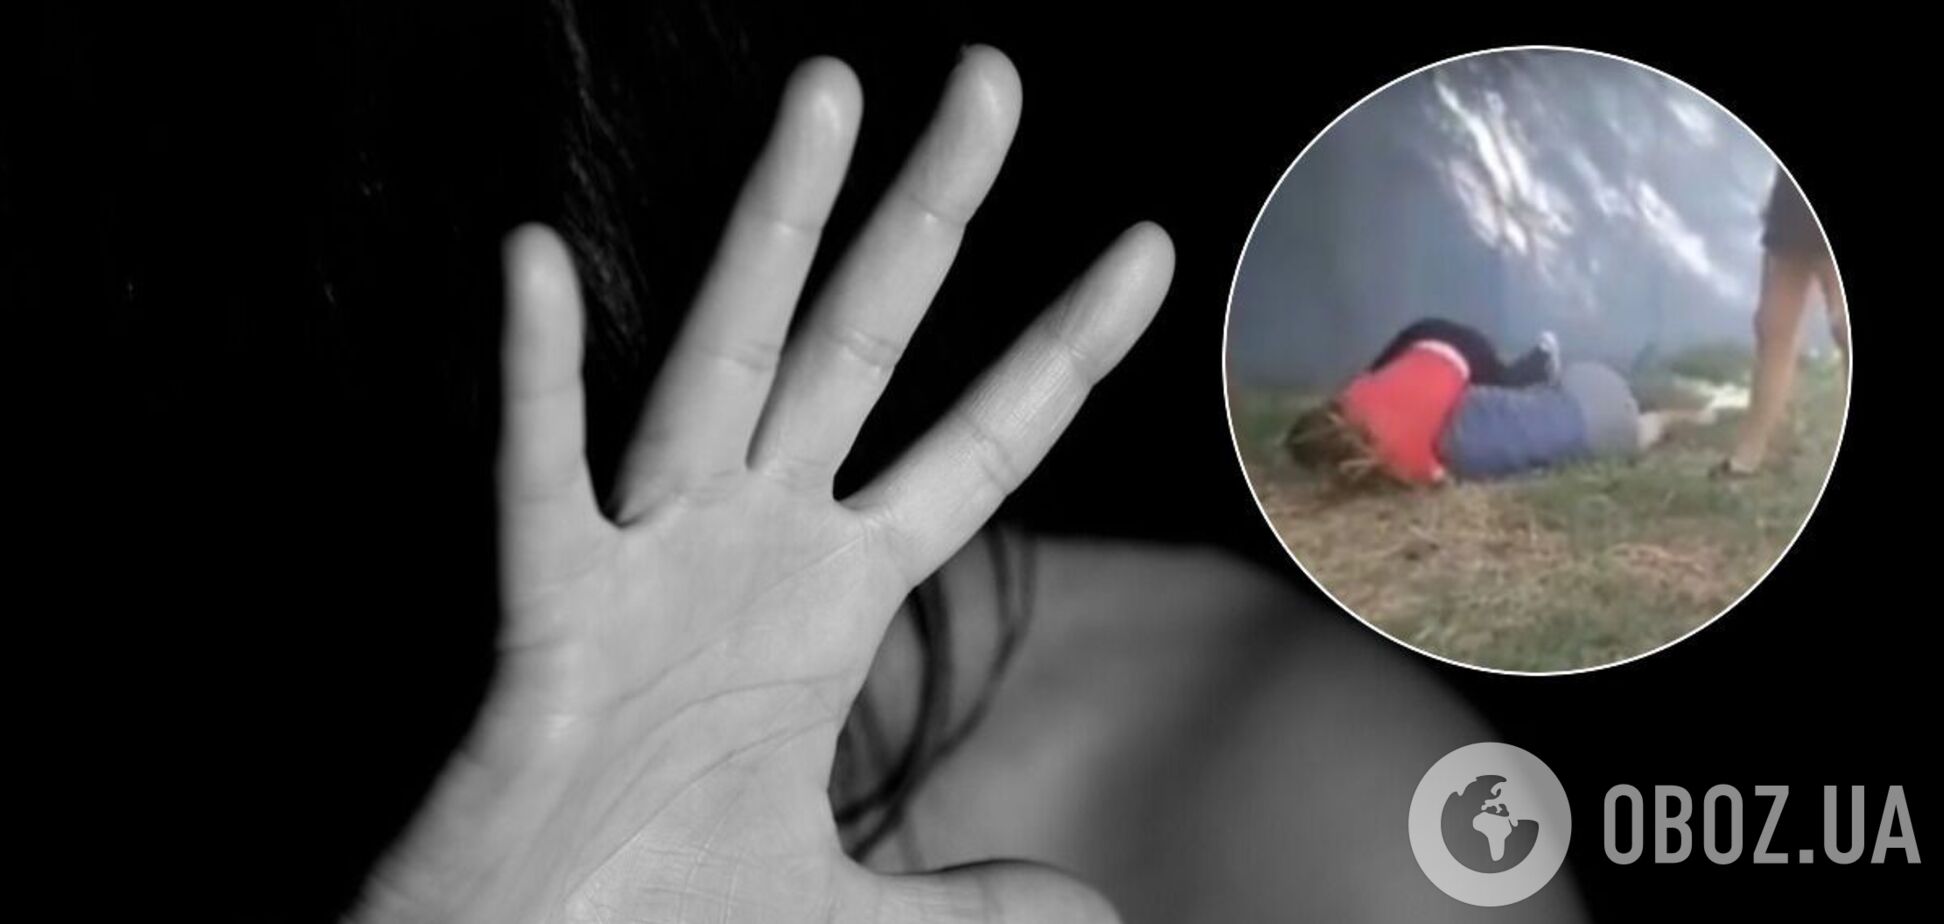 У Нікополі дівчата-підлітки жорстоко побили школярку. Відео 18+